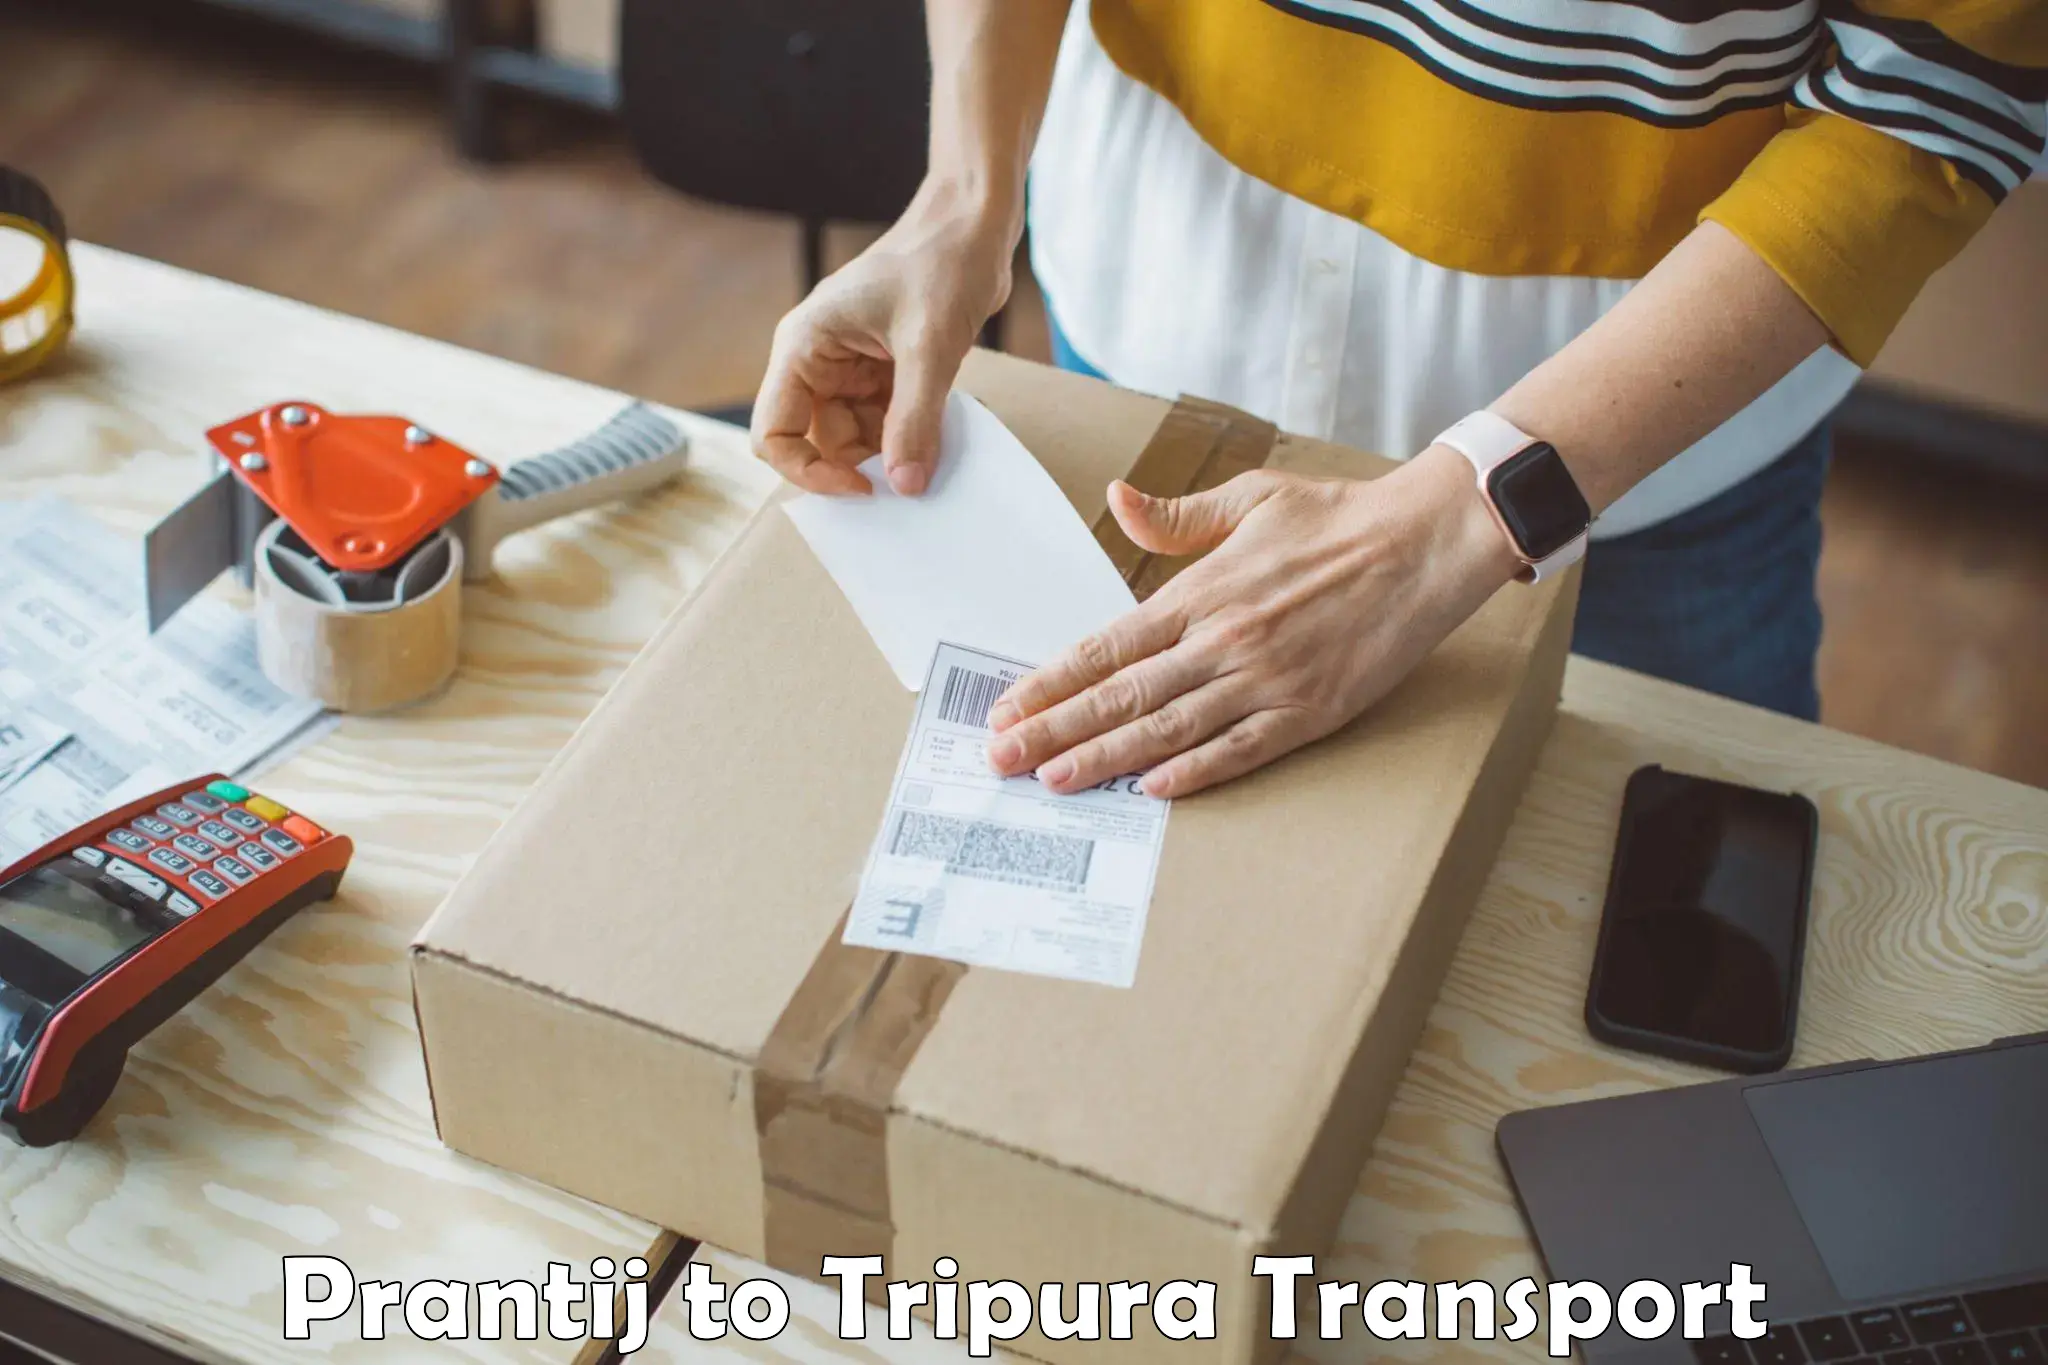 Transport services in Prantij to Tripura